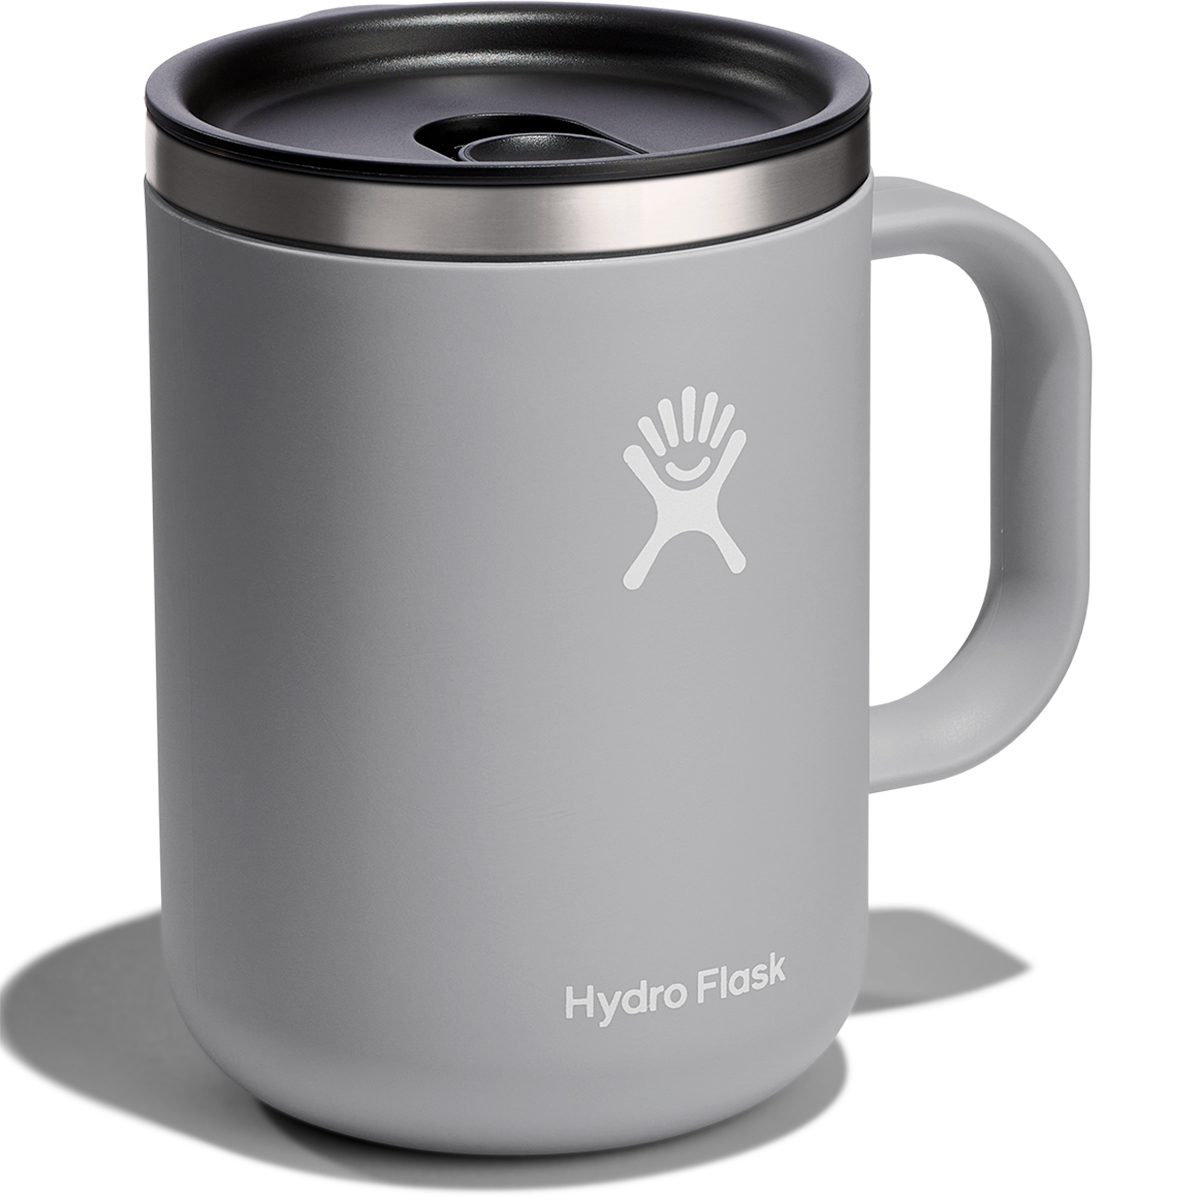 Hydro Flask – Mission Coffee, LLC